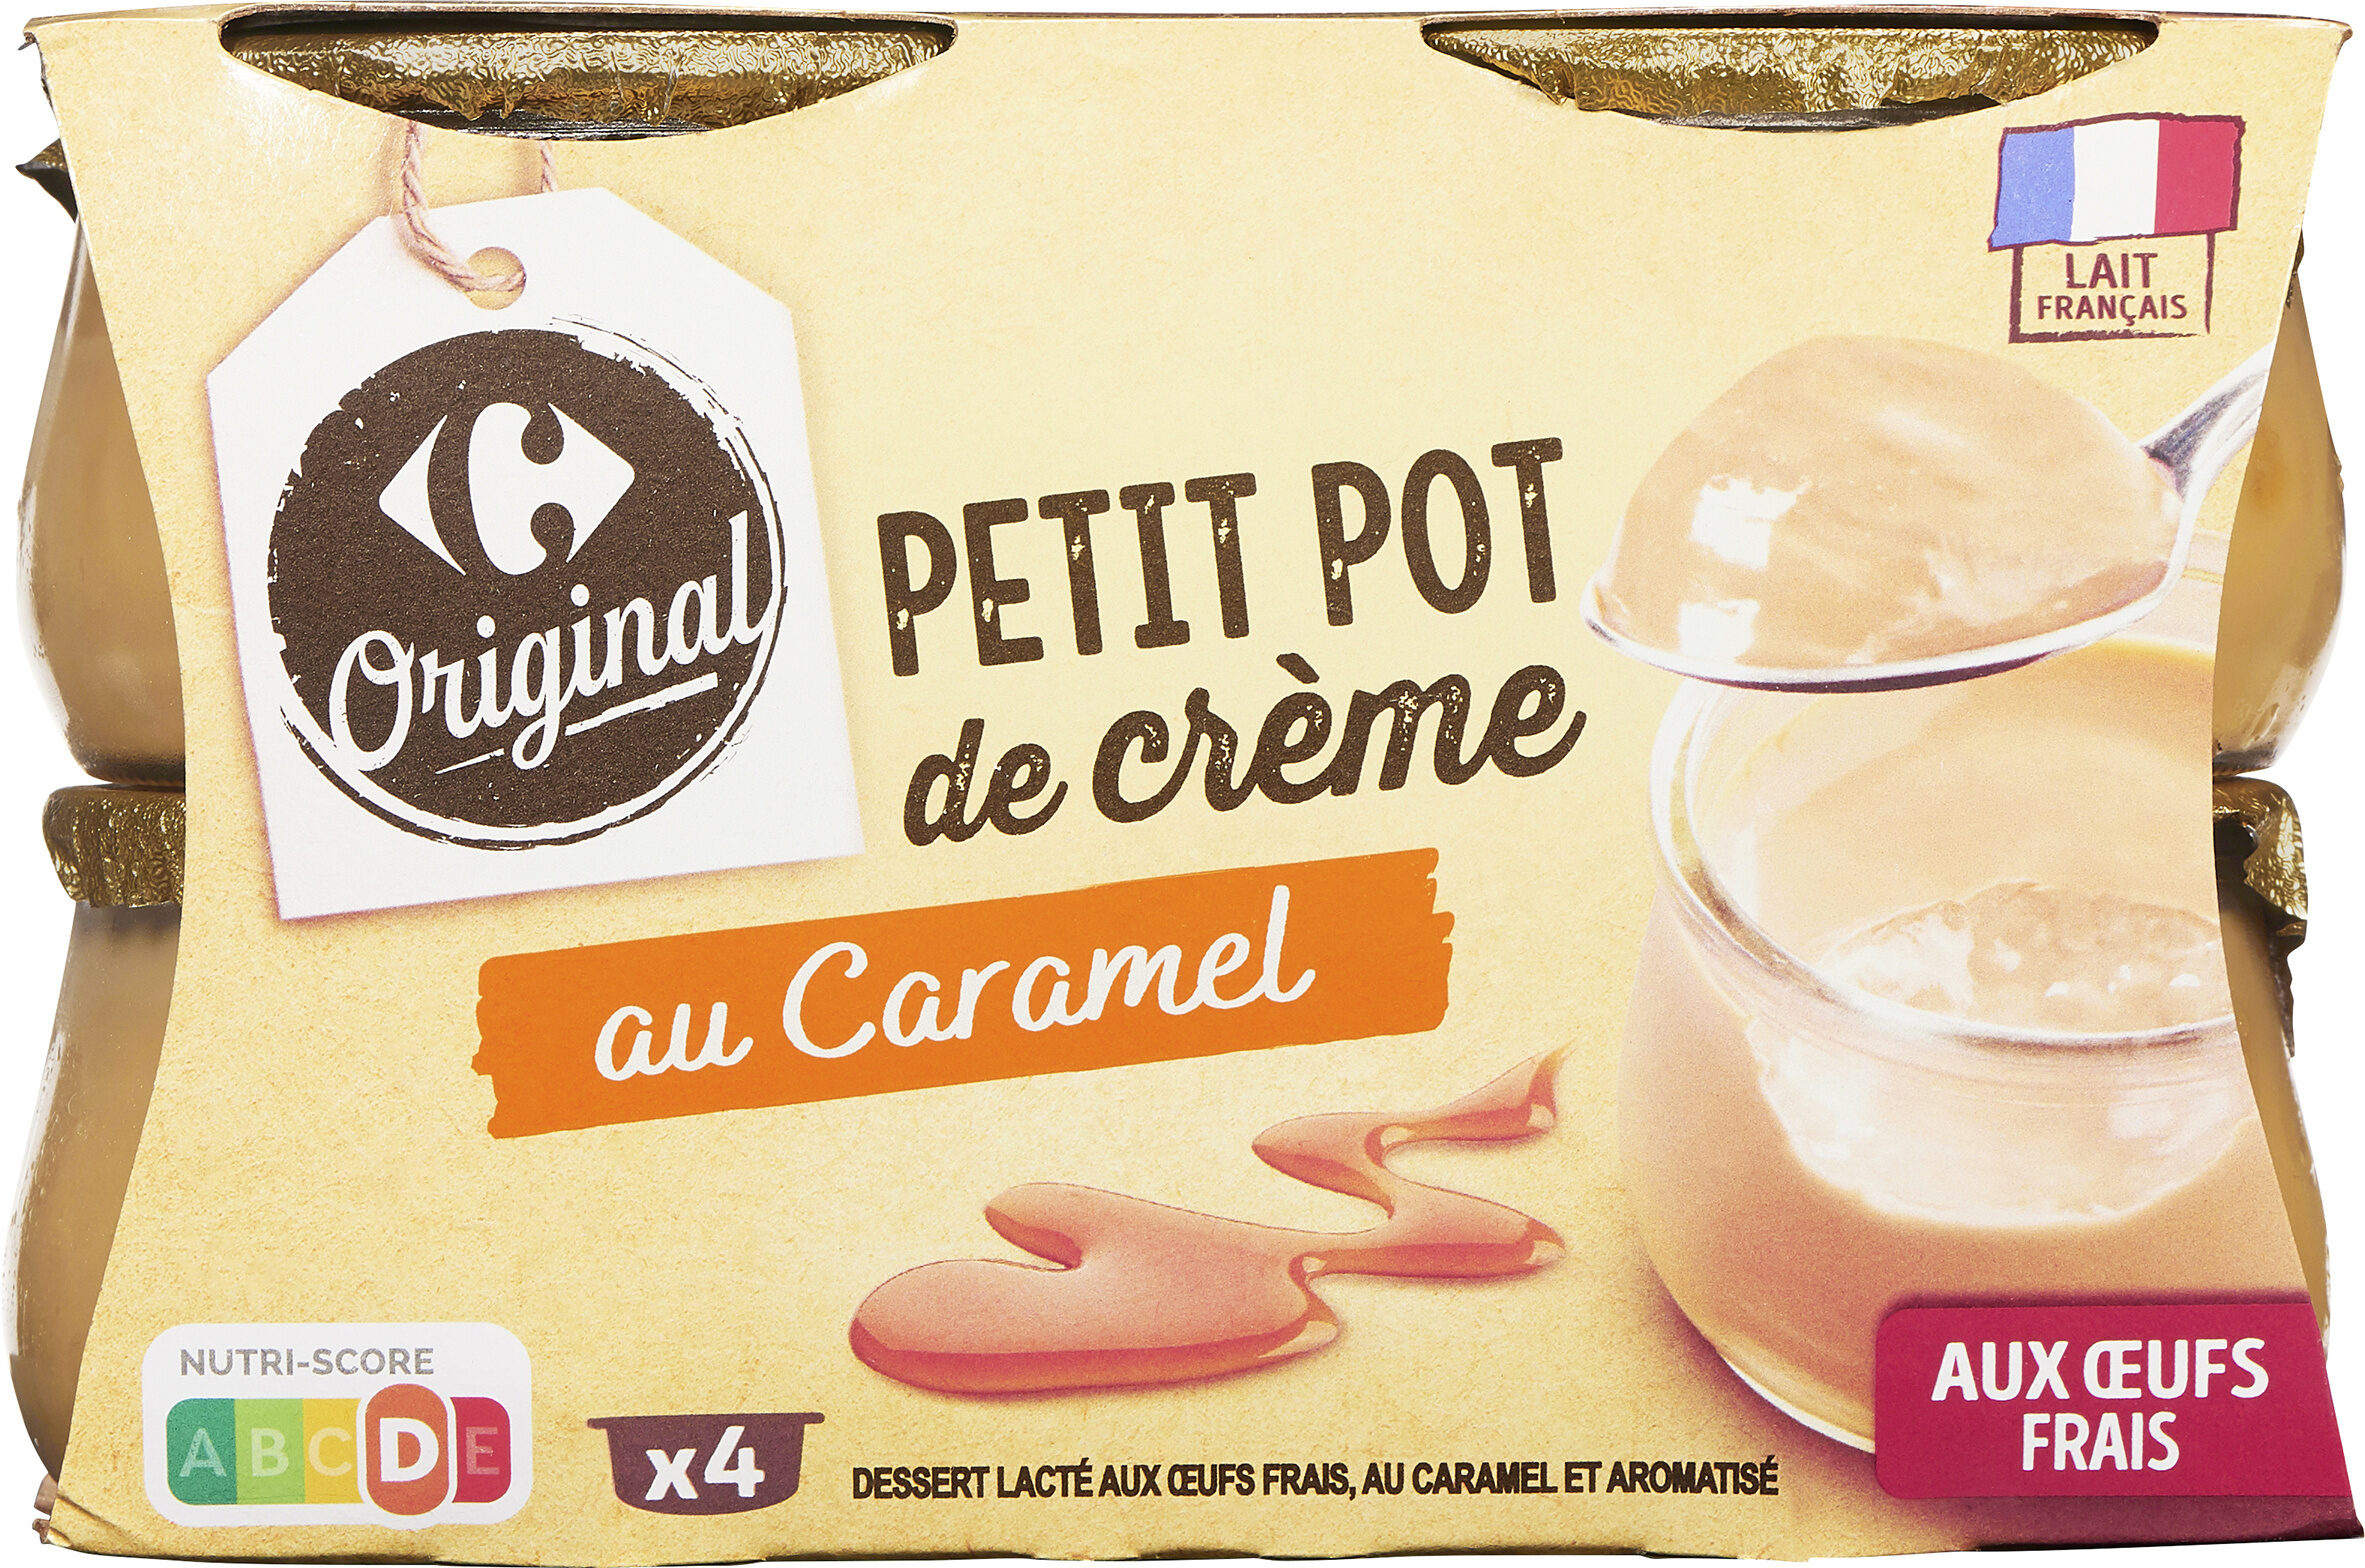 Petit pot de crème au caramel aux oeufs frais - Product - fr